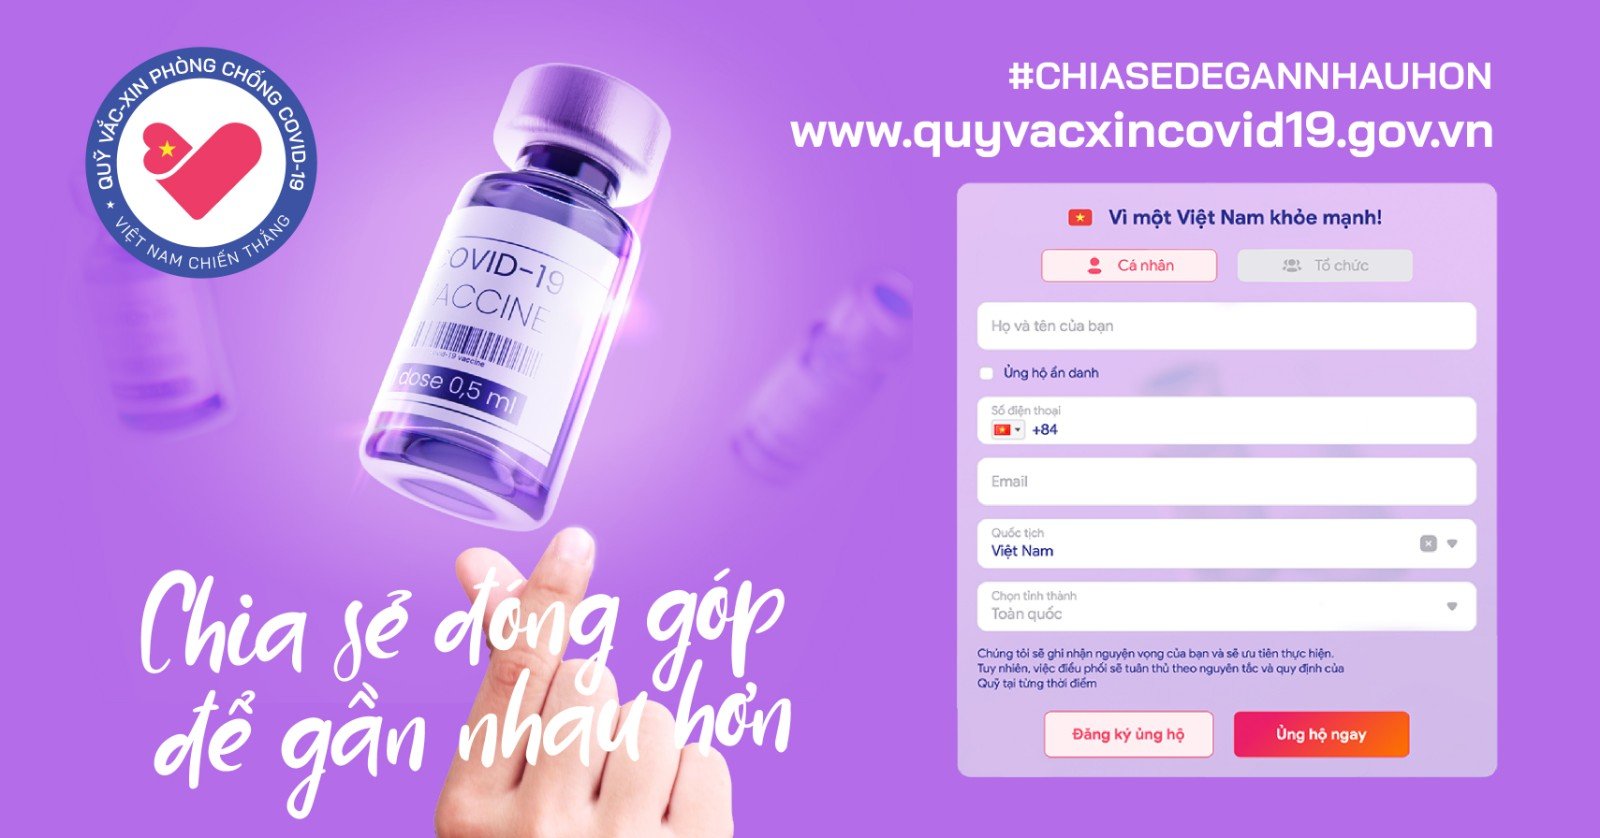 Chung tay góp Quỹ vaccine Covid-19 dễ dàng qua website vì một Việt Nam khoẻ mạnh - Ảnh 2.